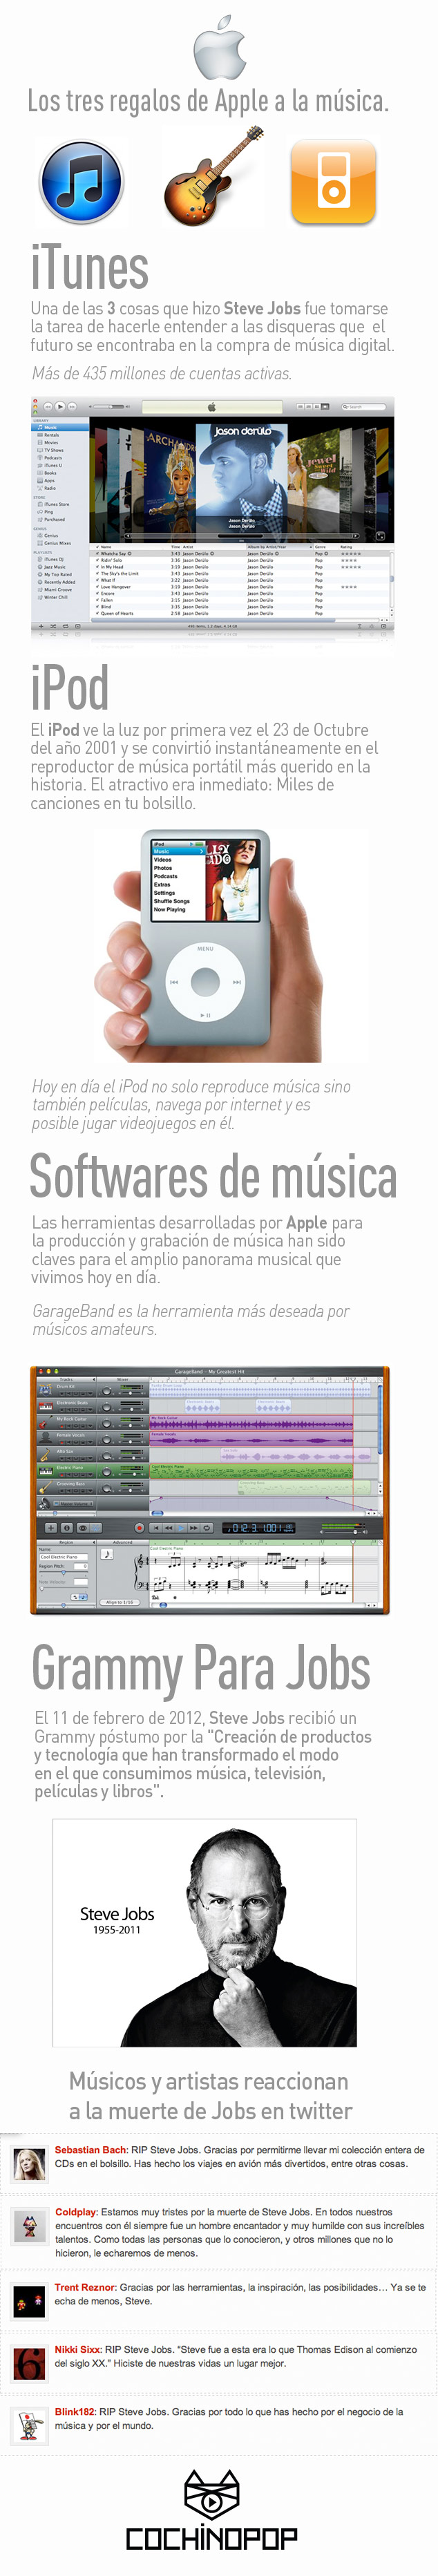 El regalo de Apple a la industria musical Infografia